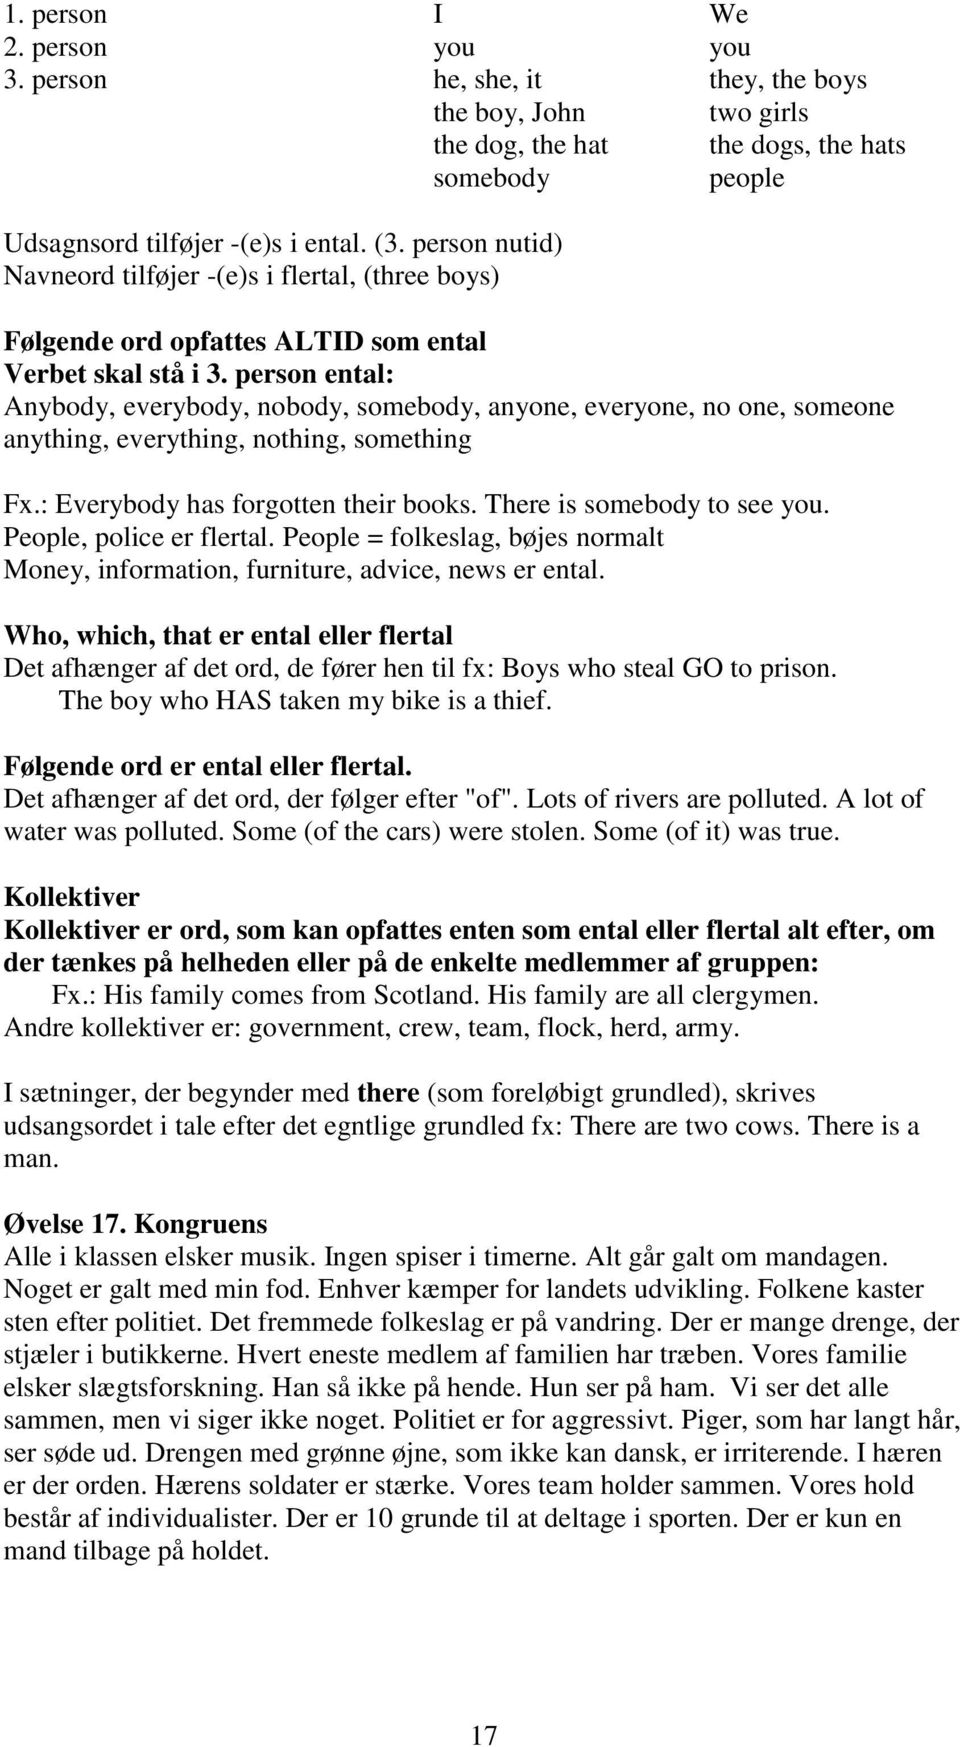 qwertyuiopåasdfghjklæøzxcvbnmqw ertyuiopåasdfghjklæøzxcvbnmqwert Indføring i engelsk grammatik klasse, 2015, af Finn - PDF Free Download